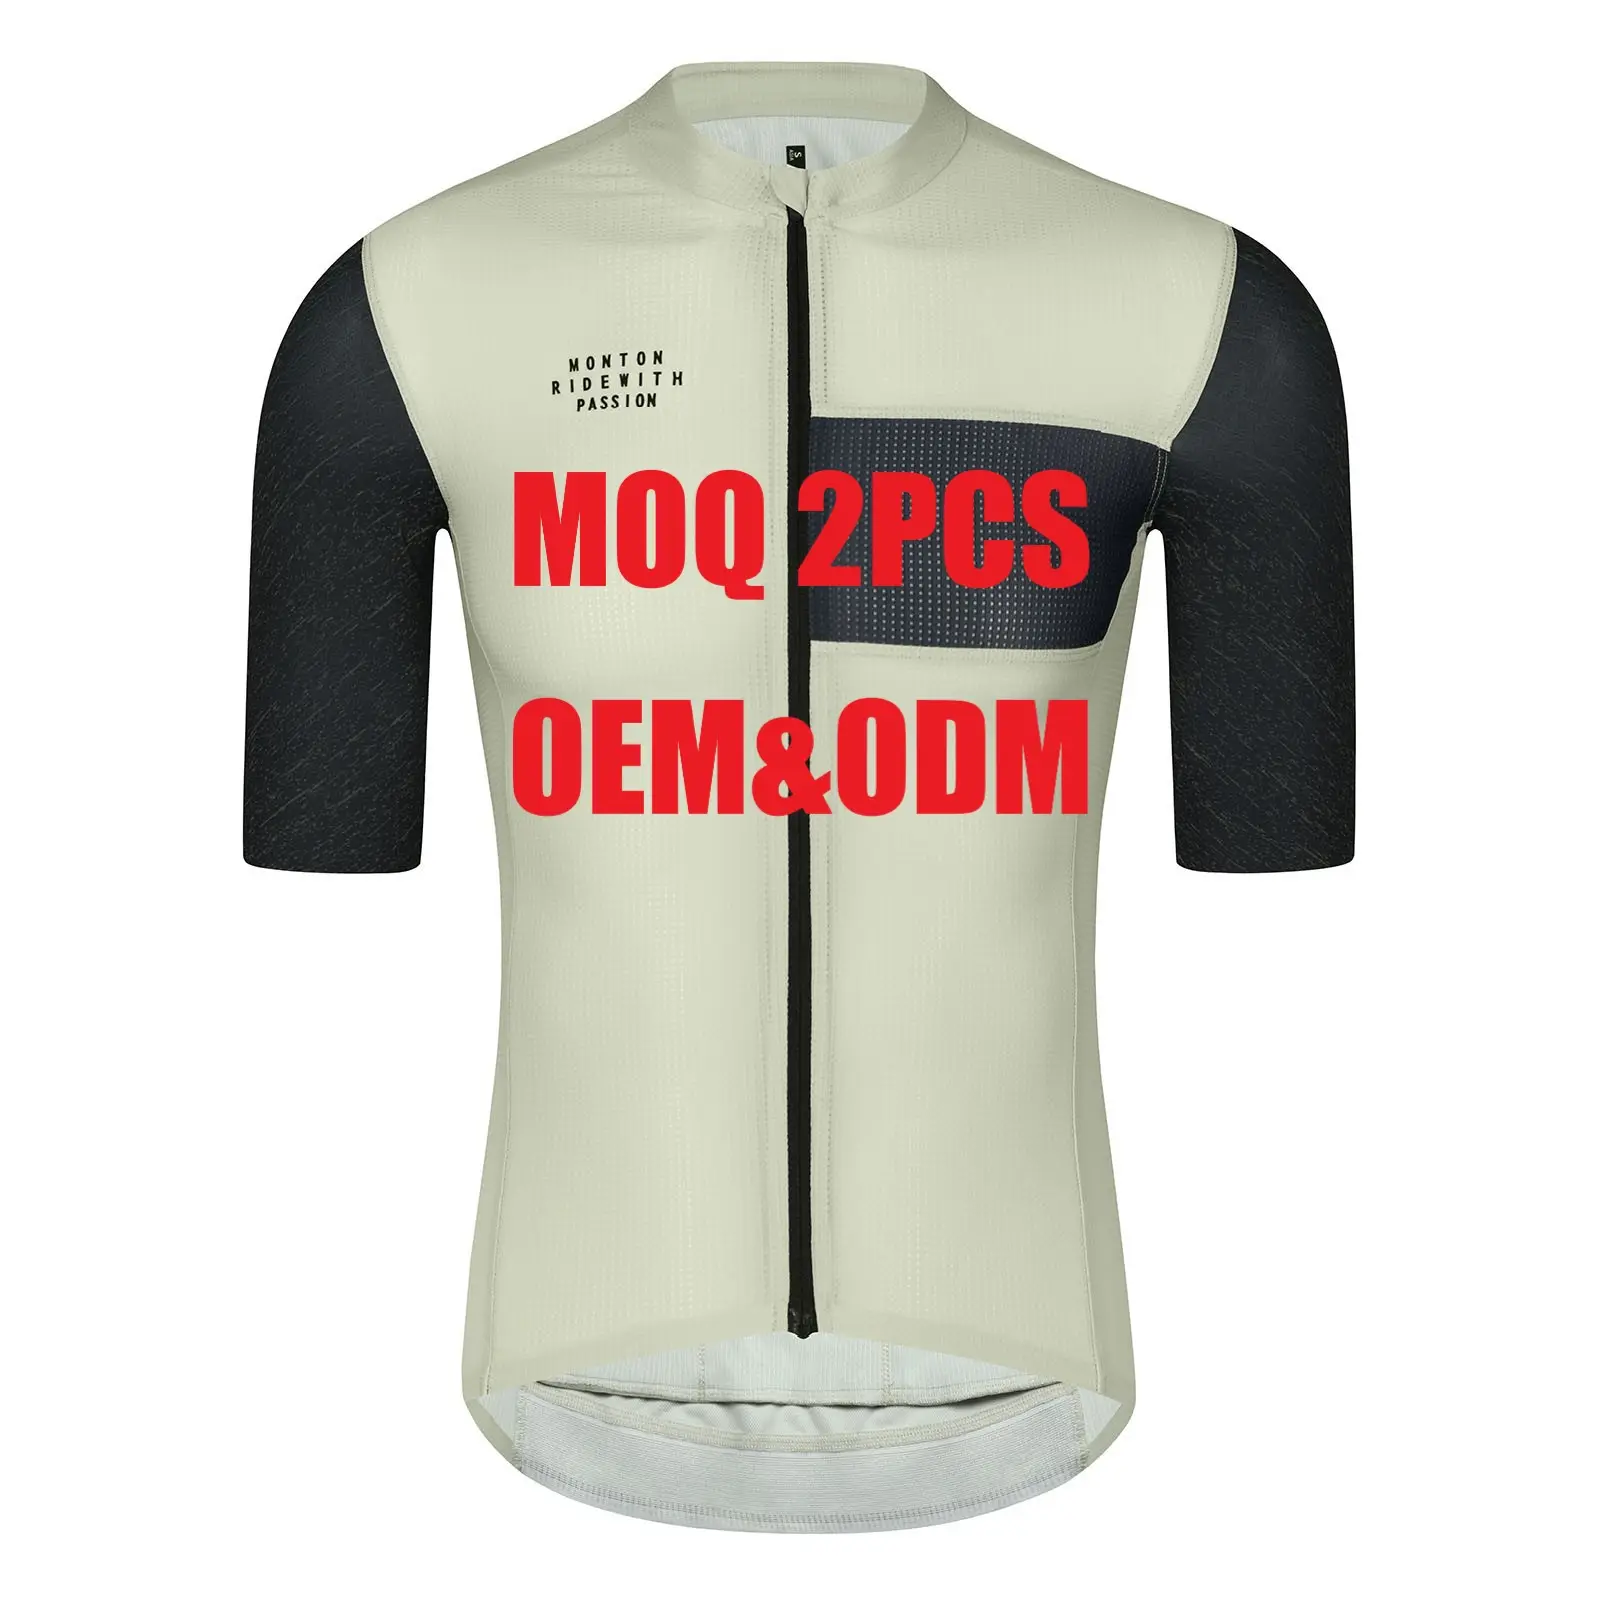 Monton Custom Sublimation Printing Logo Kein Mindest design Italien Pro Fit Team Fahrrads ets Radsport bekleidung Rad trikot für Männer Frauen